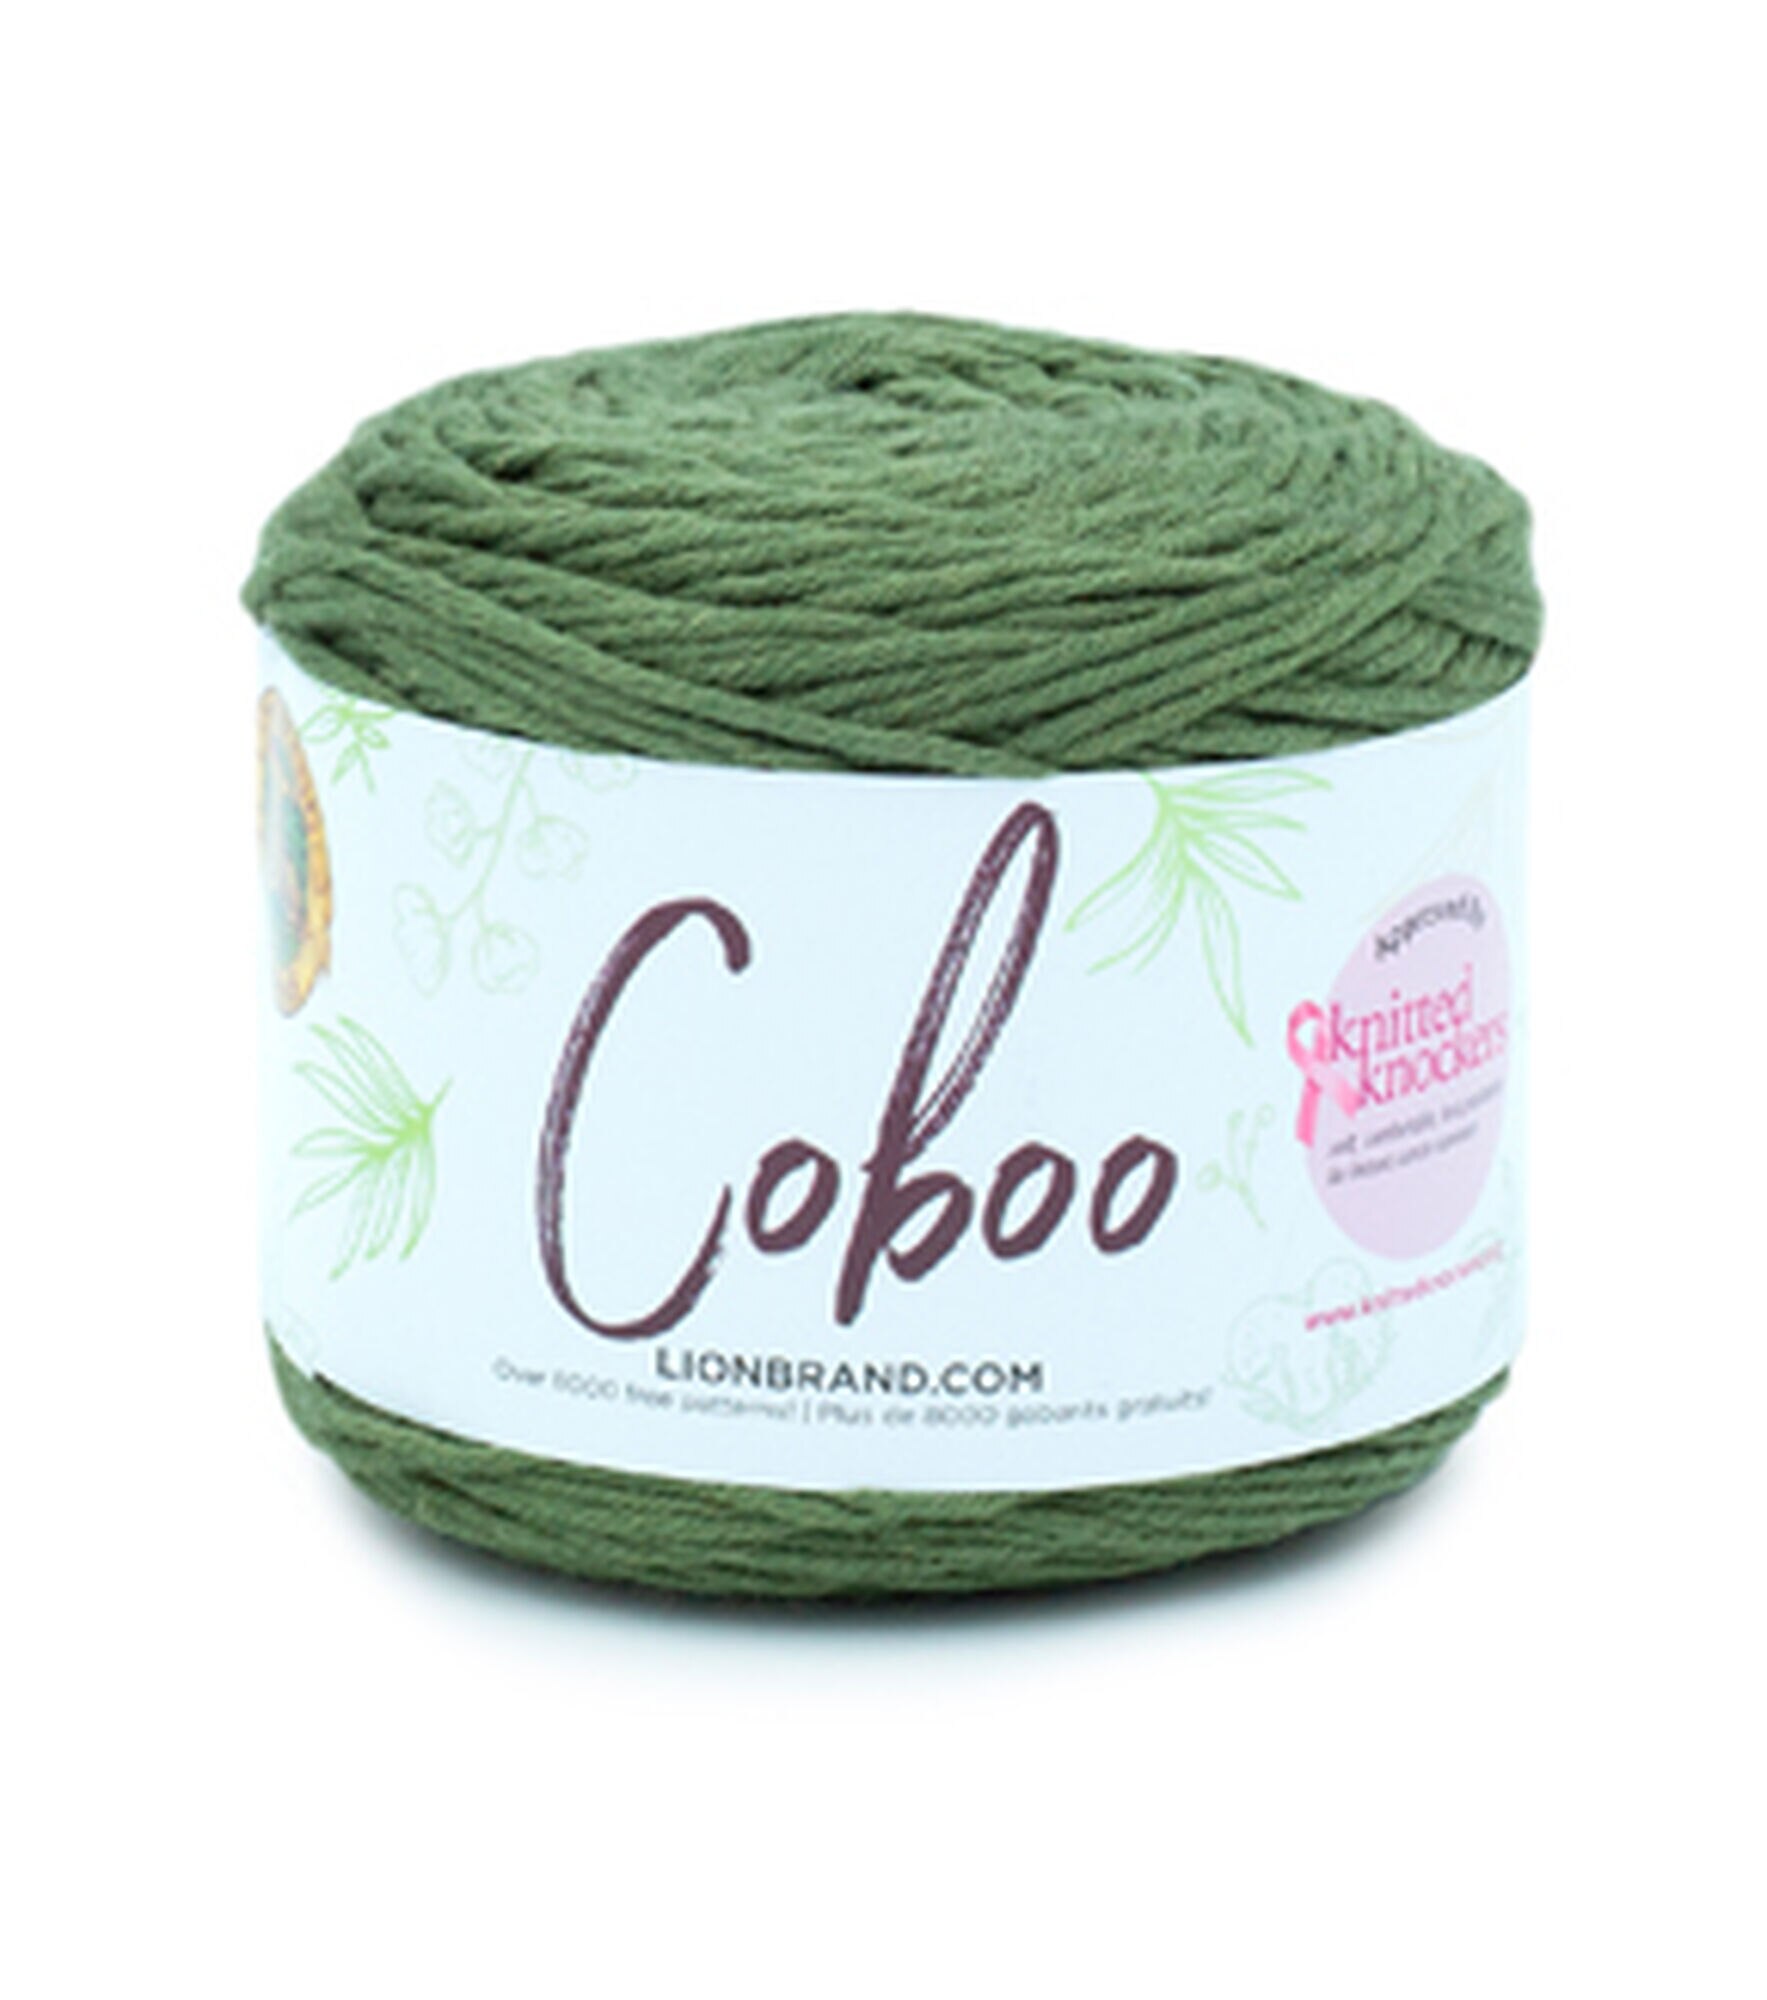 Lion Brand Coboo Natural Fiber 232yds Light Weight Cotton Yarn, Olive, hi-res